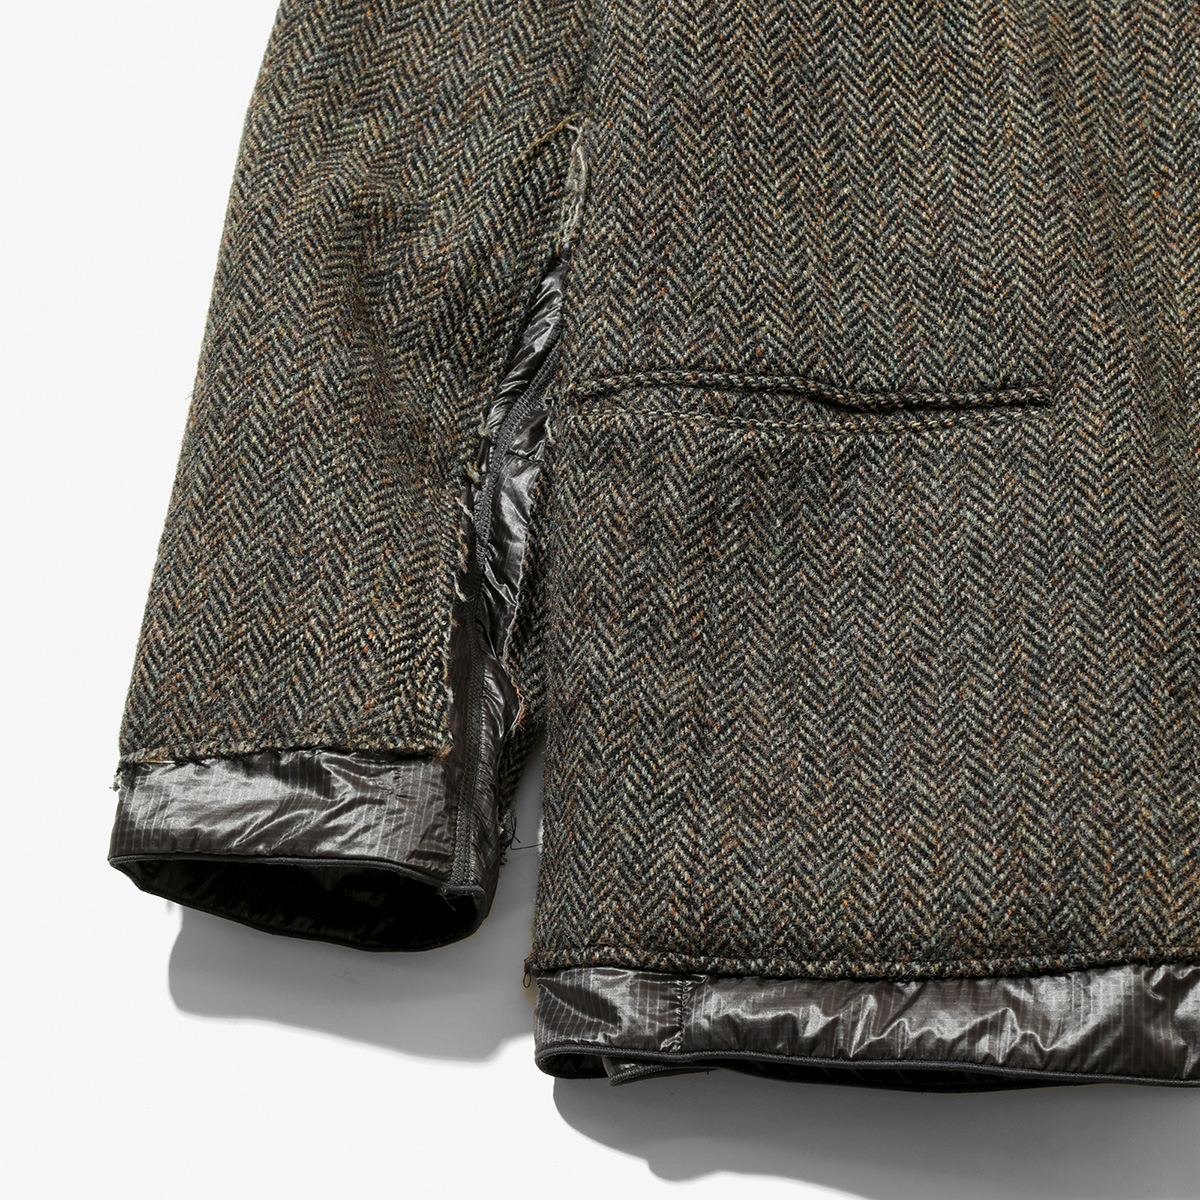 REBUILD by NEEDLES〉新型アイテムのジャケットとコートが登場 